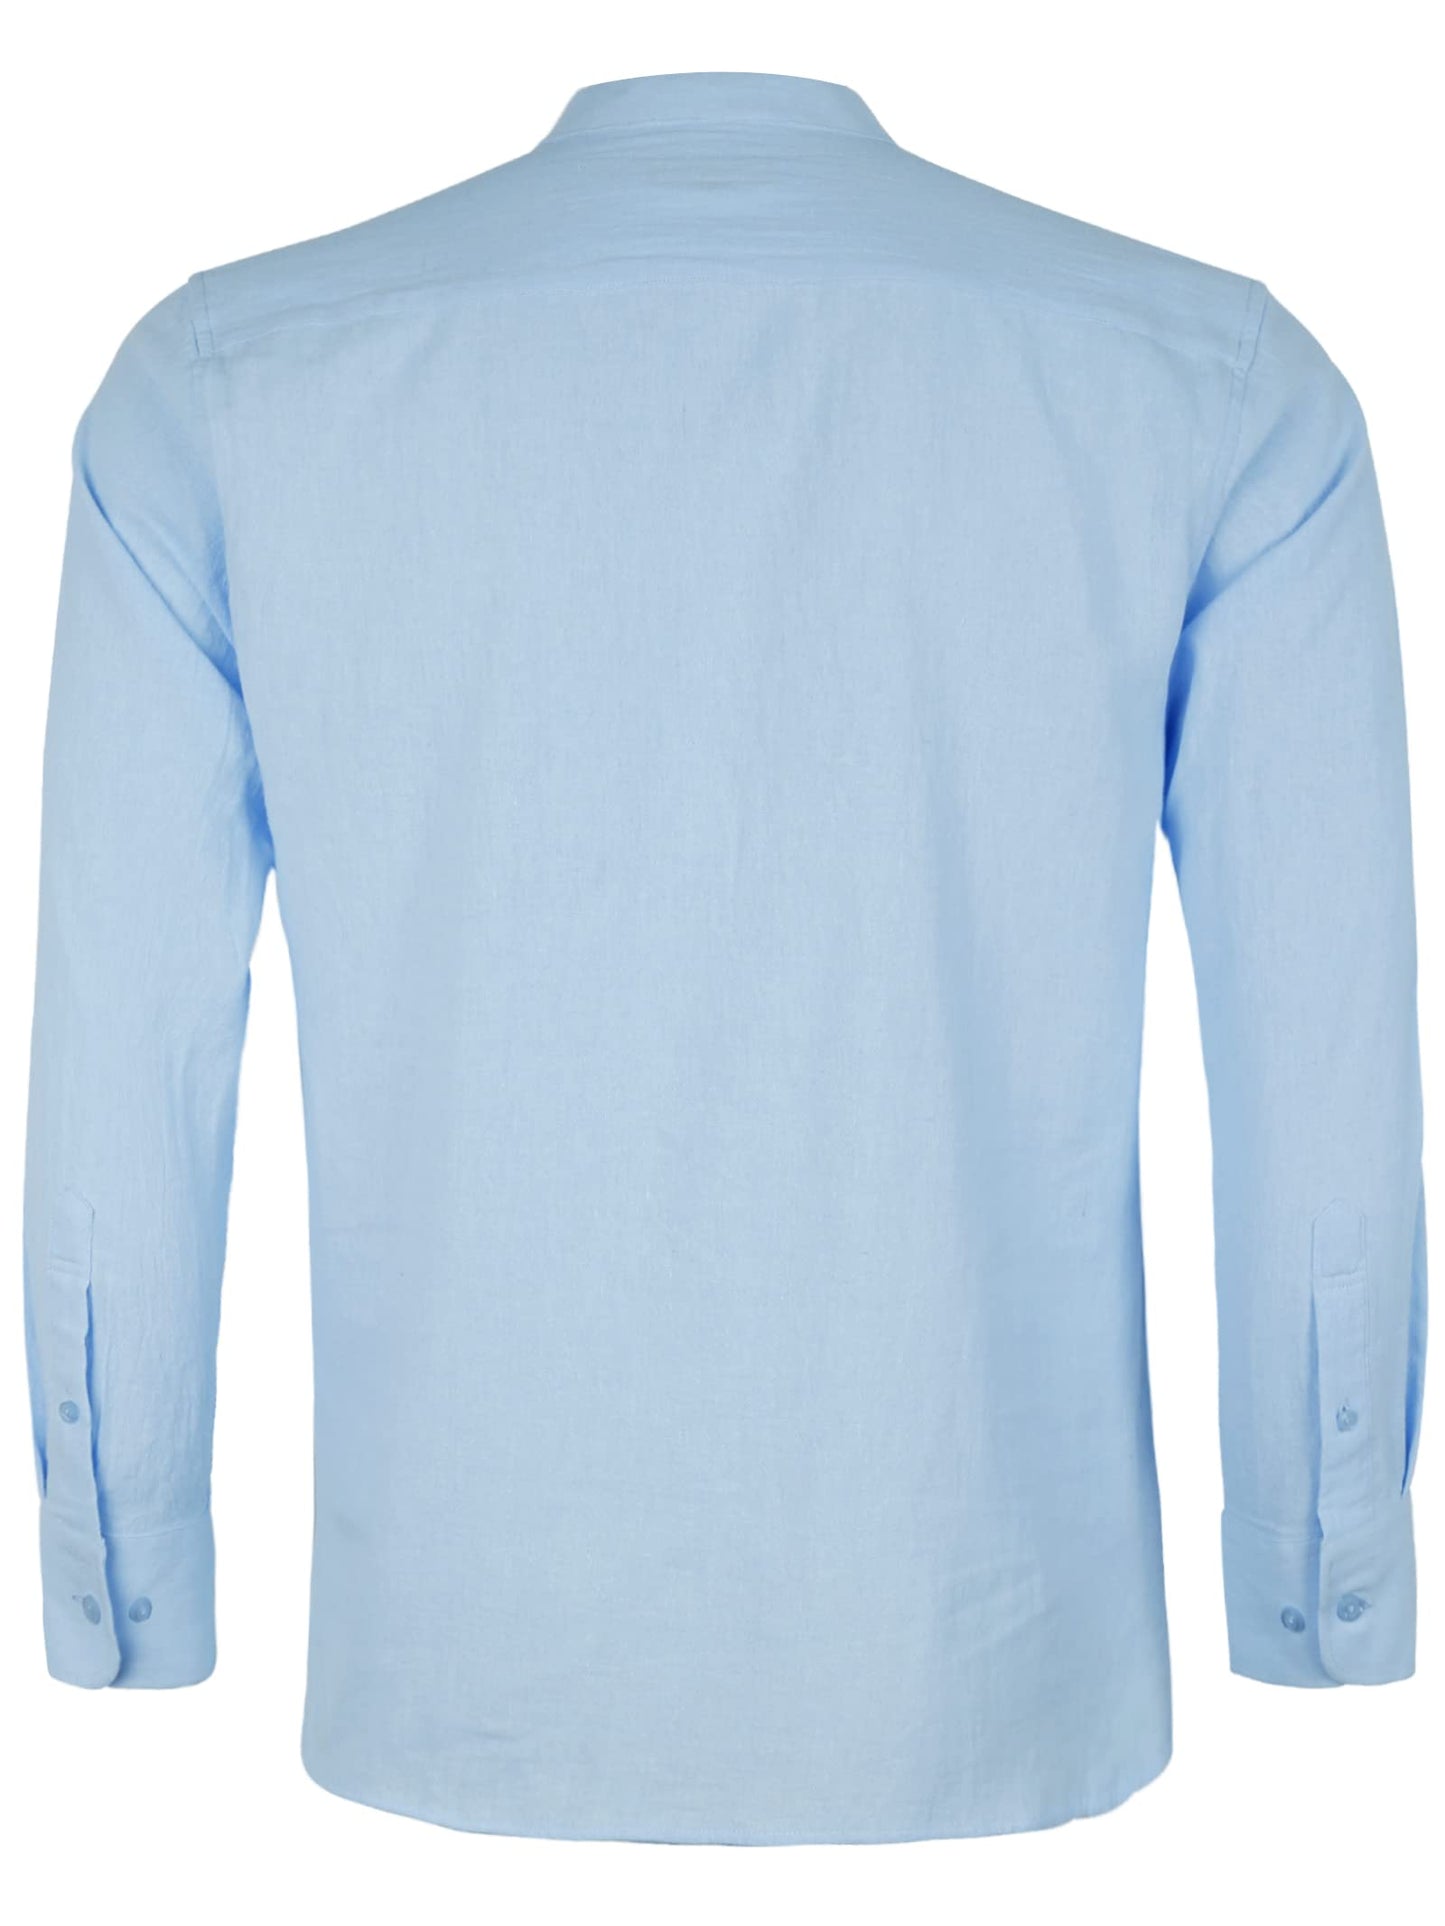 Men's Henley Shirt Long Sleeve Casual Cotton Beach Vacation Shirt, 100-Light Blue